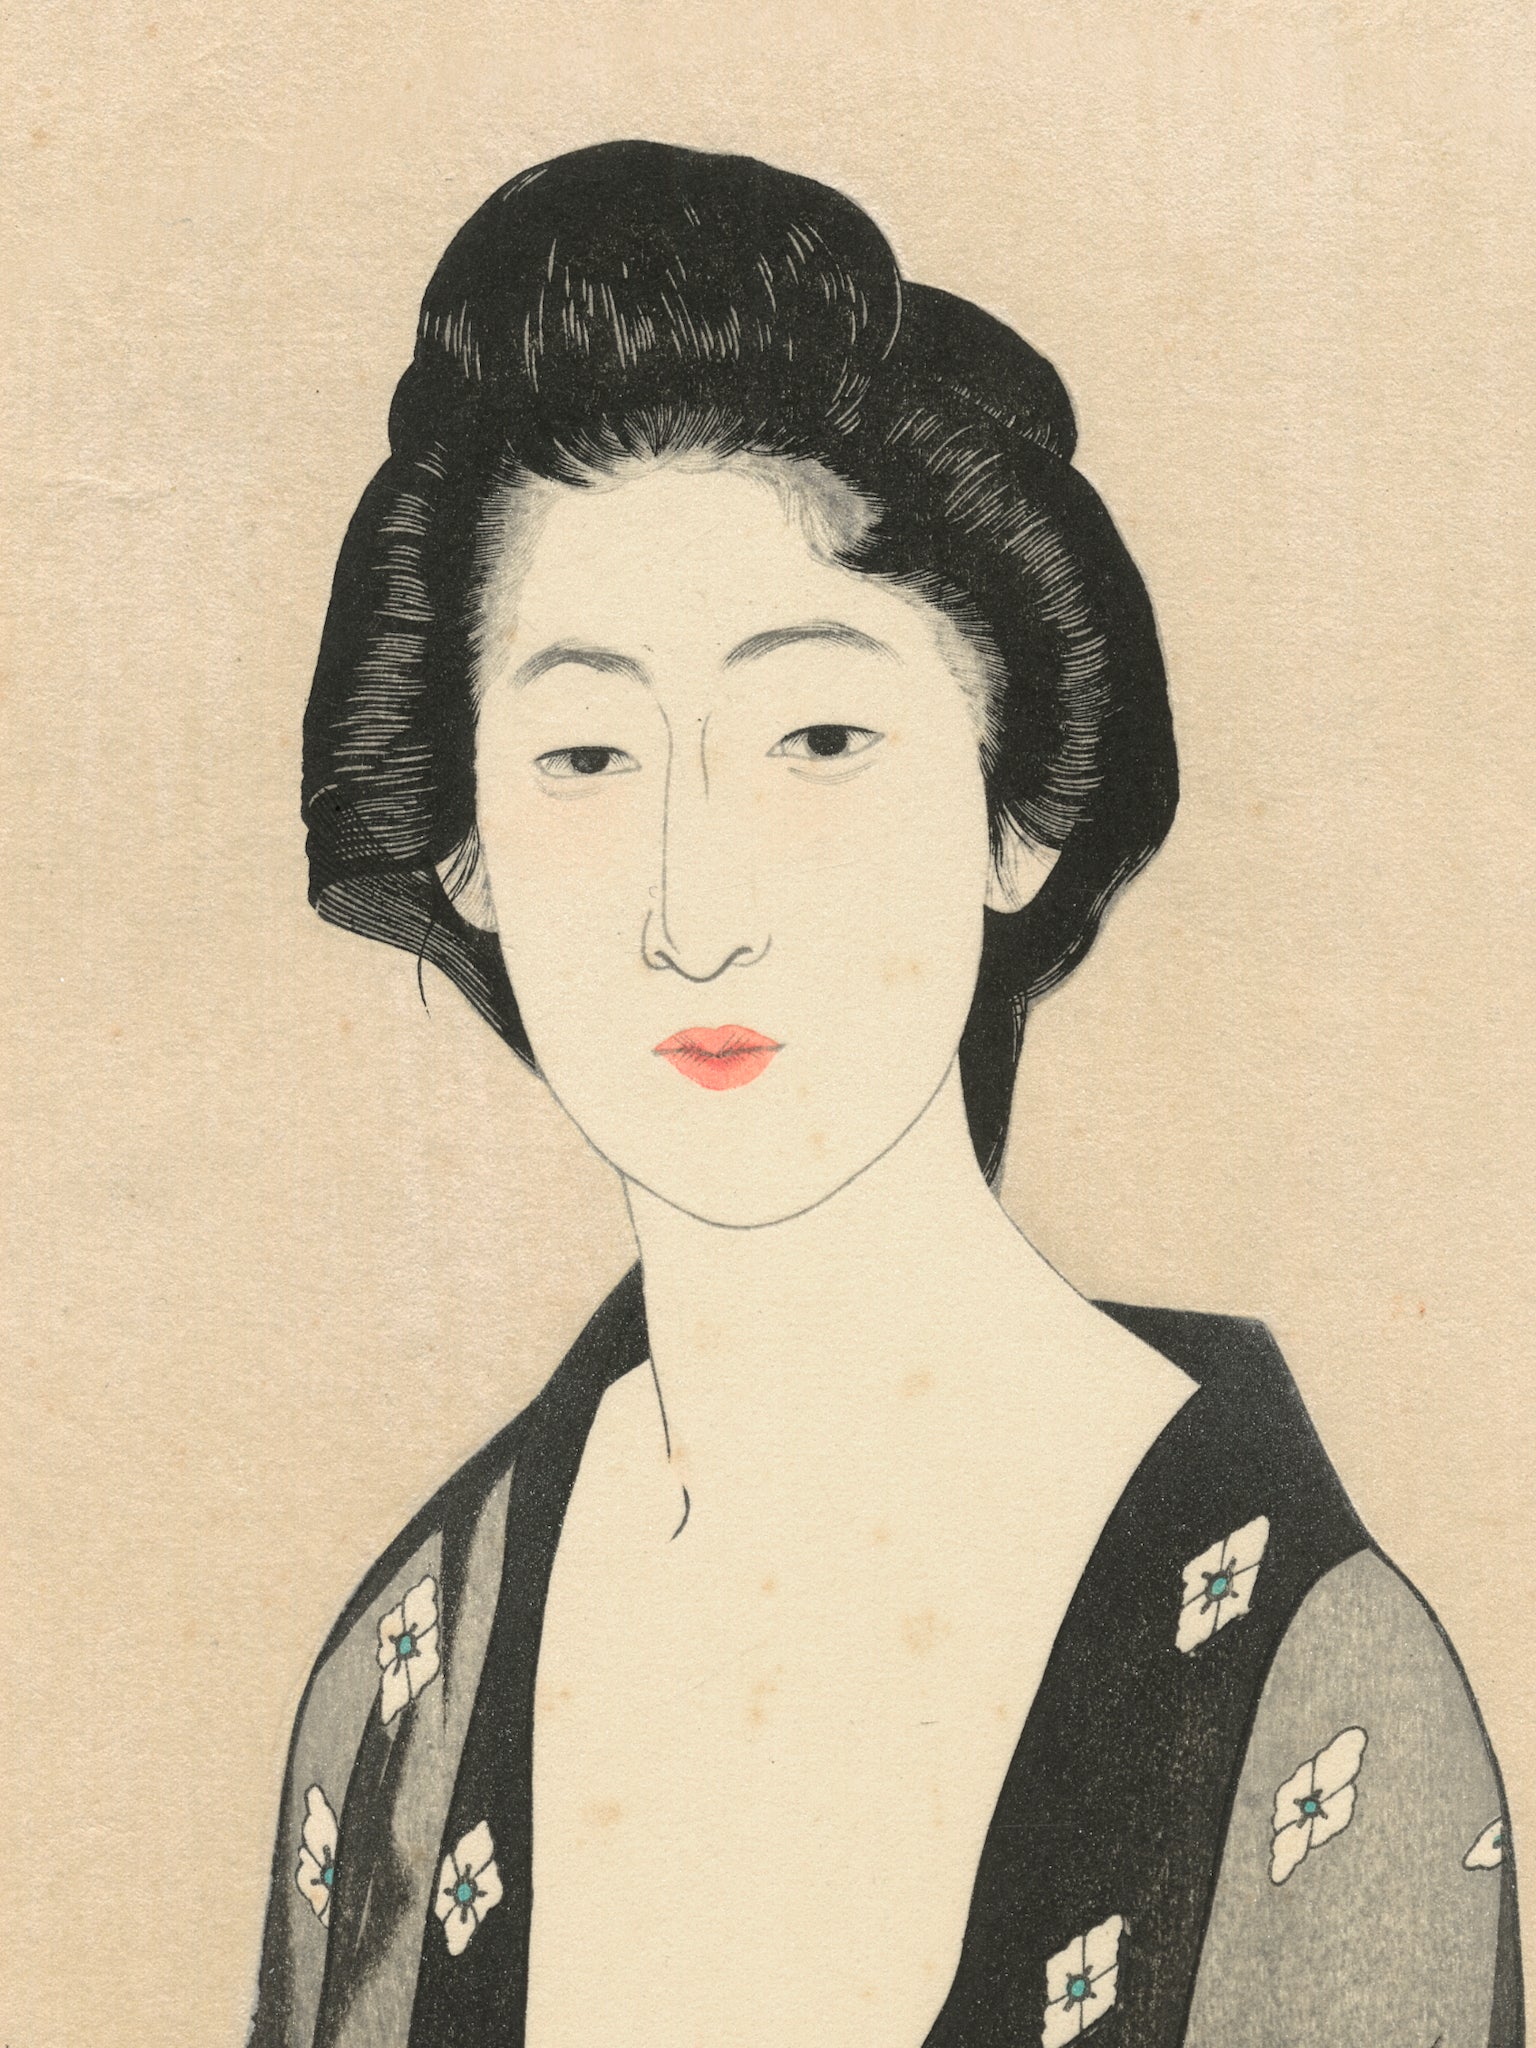 Estampe japonaise détail de l’estampe, visage de la femme, le cheveux épinglés, le regard tourné vers nous